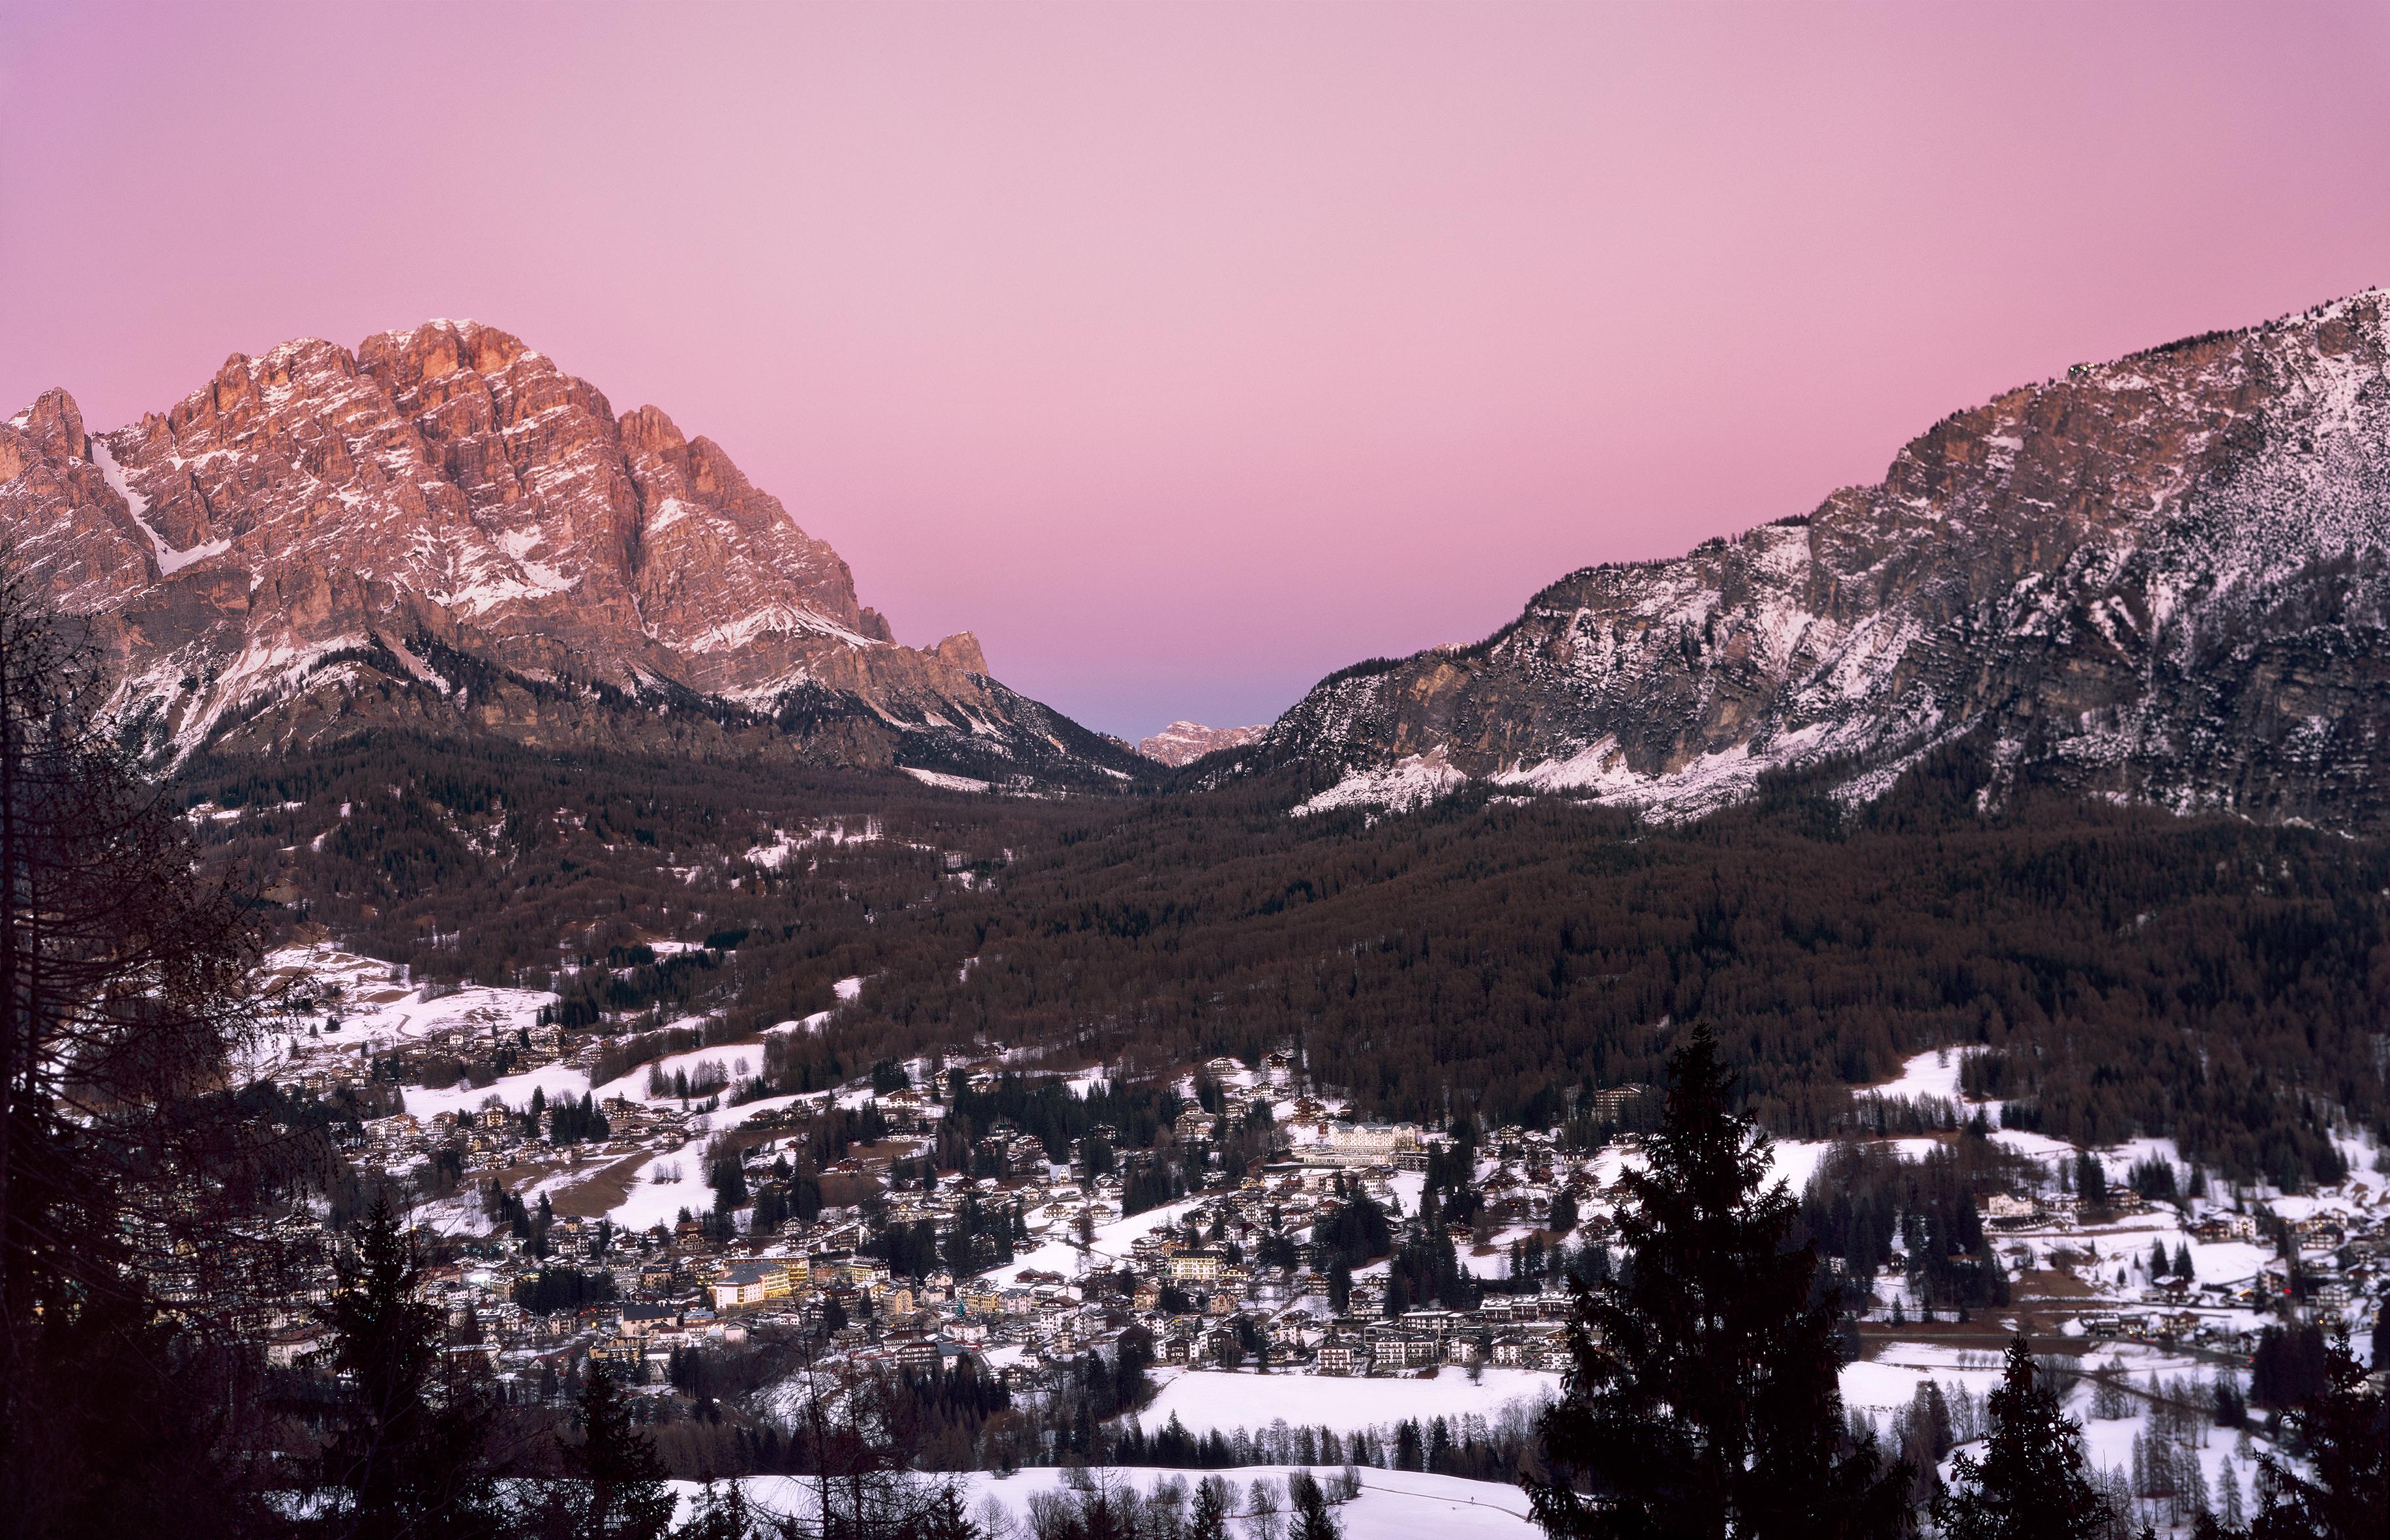 Cortina d'Ampezzo - Photographie analogique de coucher de soleil sur les Dolomites italiennes